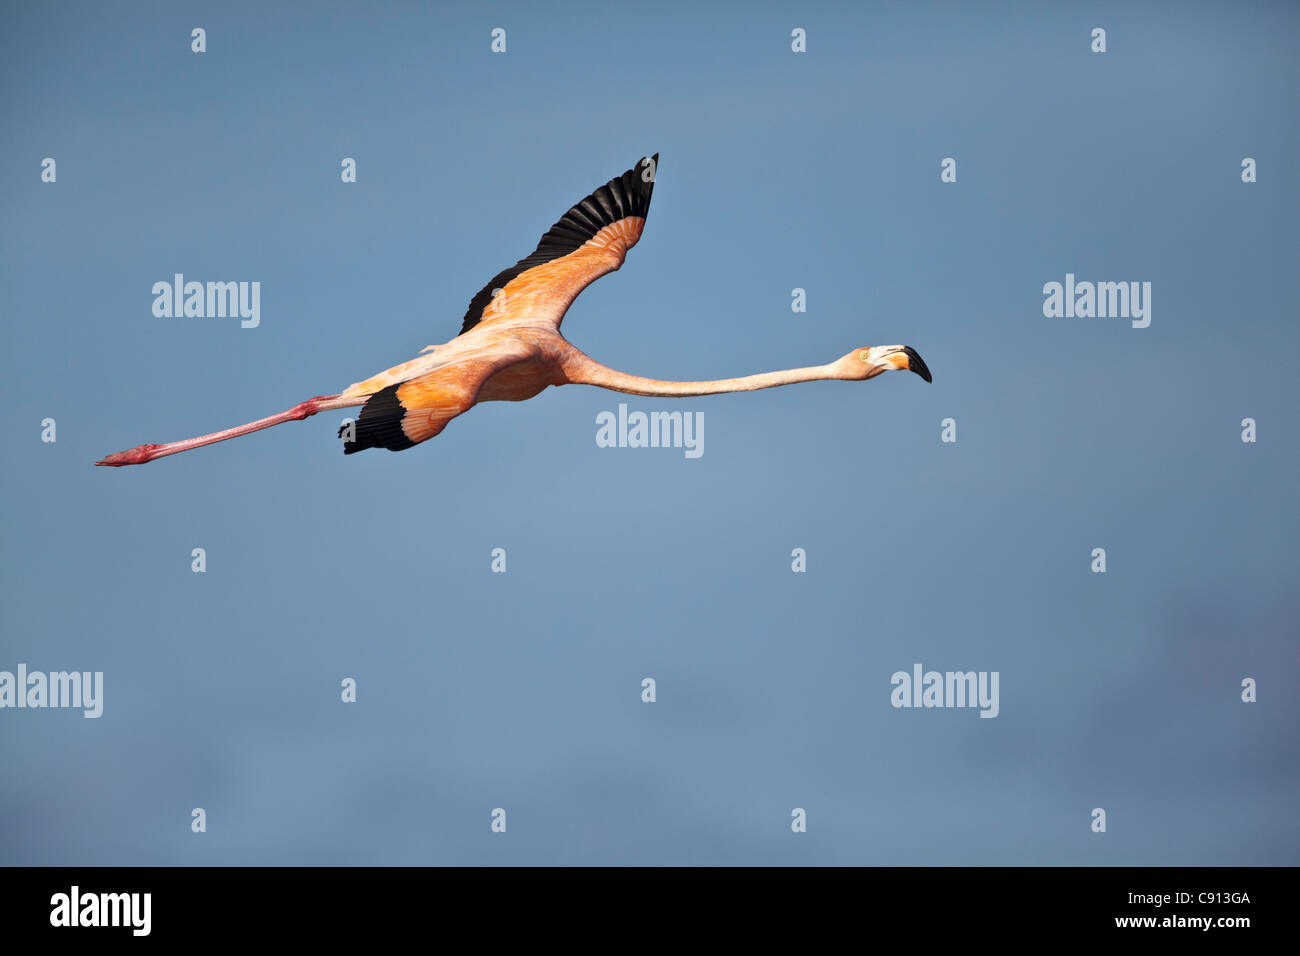 The Netherlands, Bonaire Island, Dutch Caribbean, Kralendijk, American or Caribbean Flamingo ( Phoenicopterus ruber ). Stock Photo